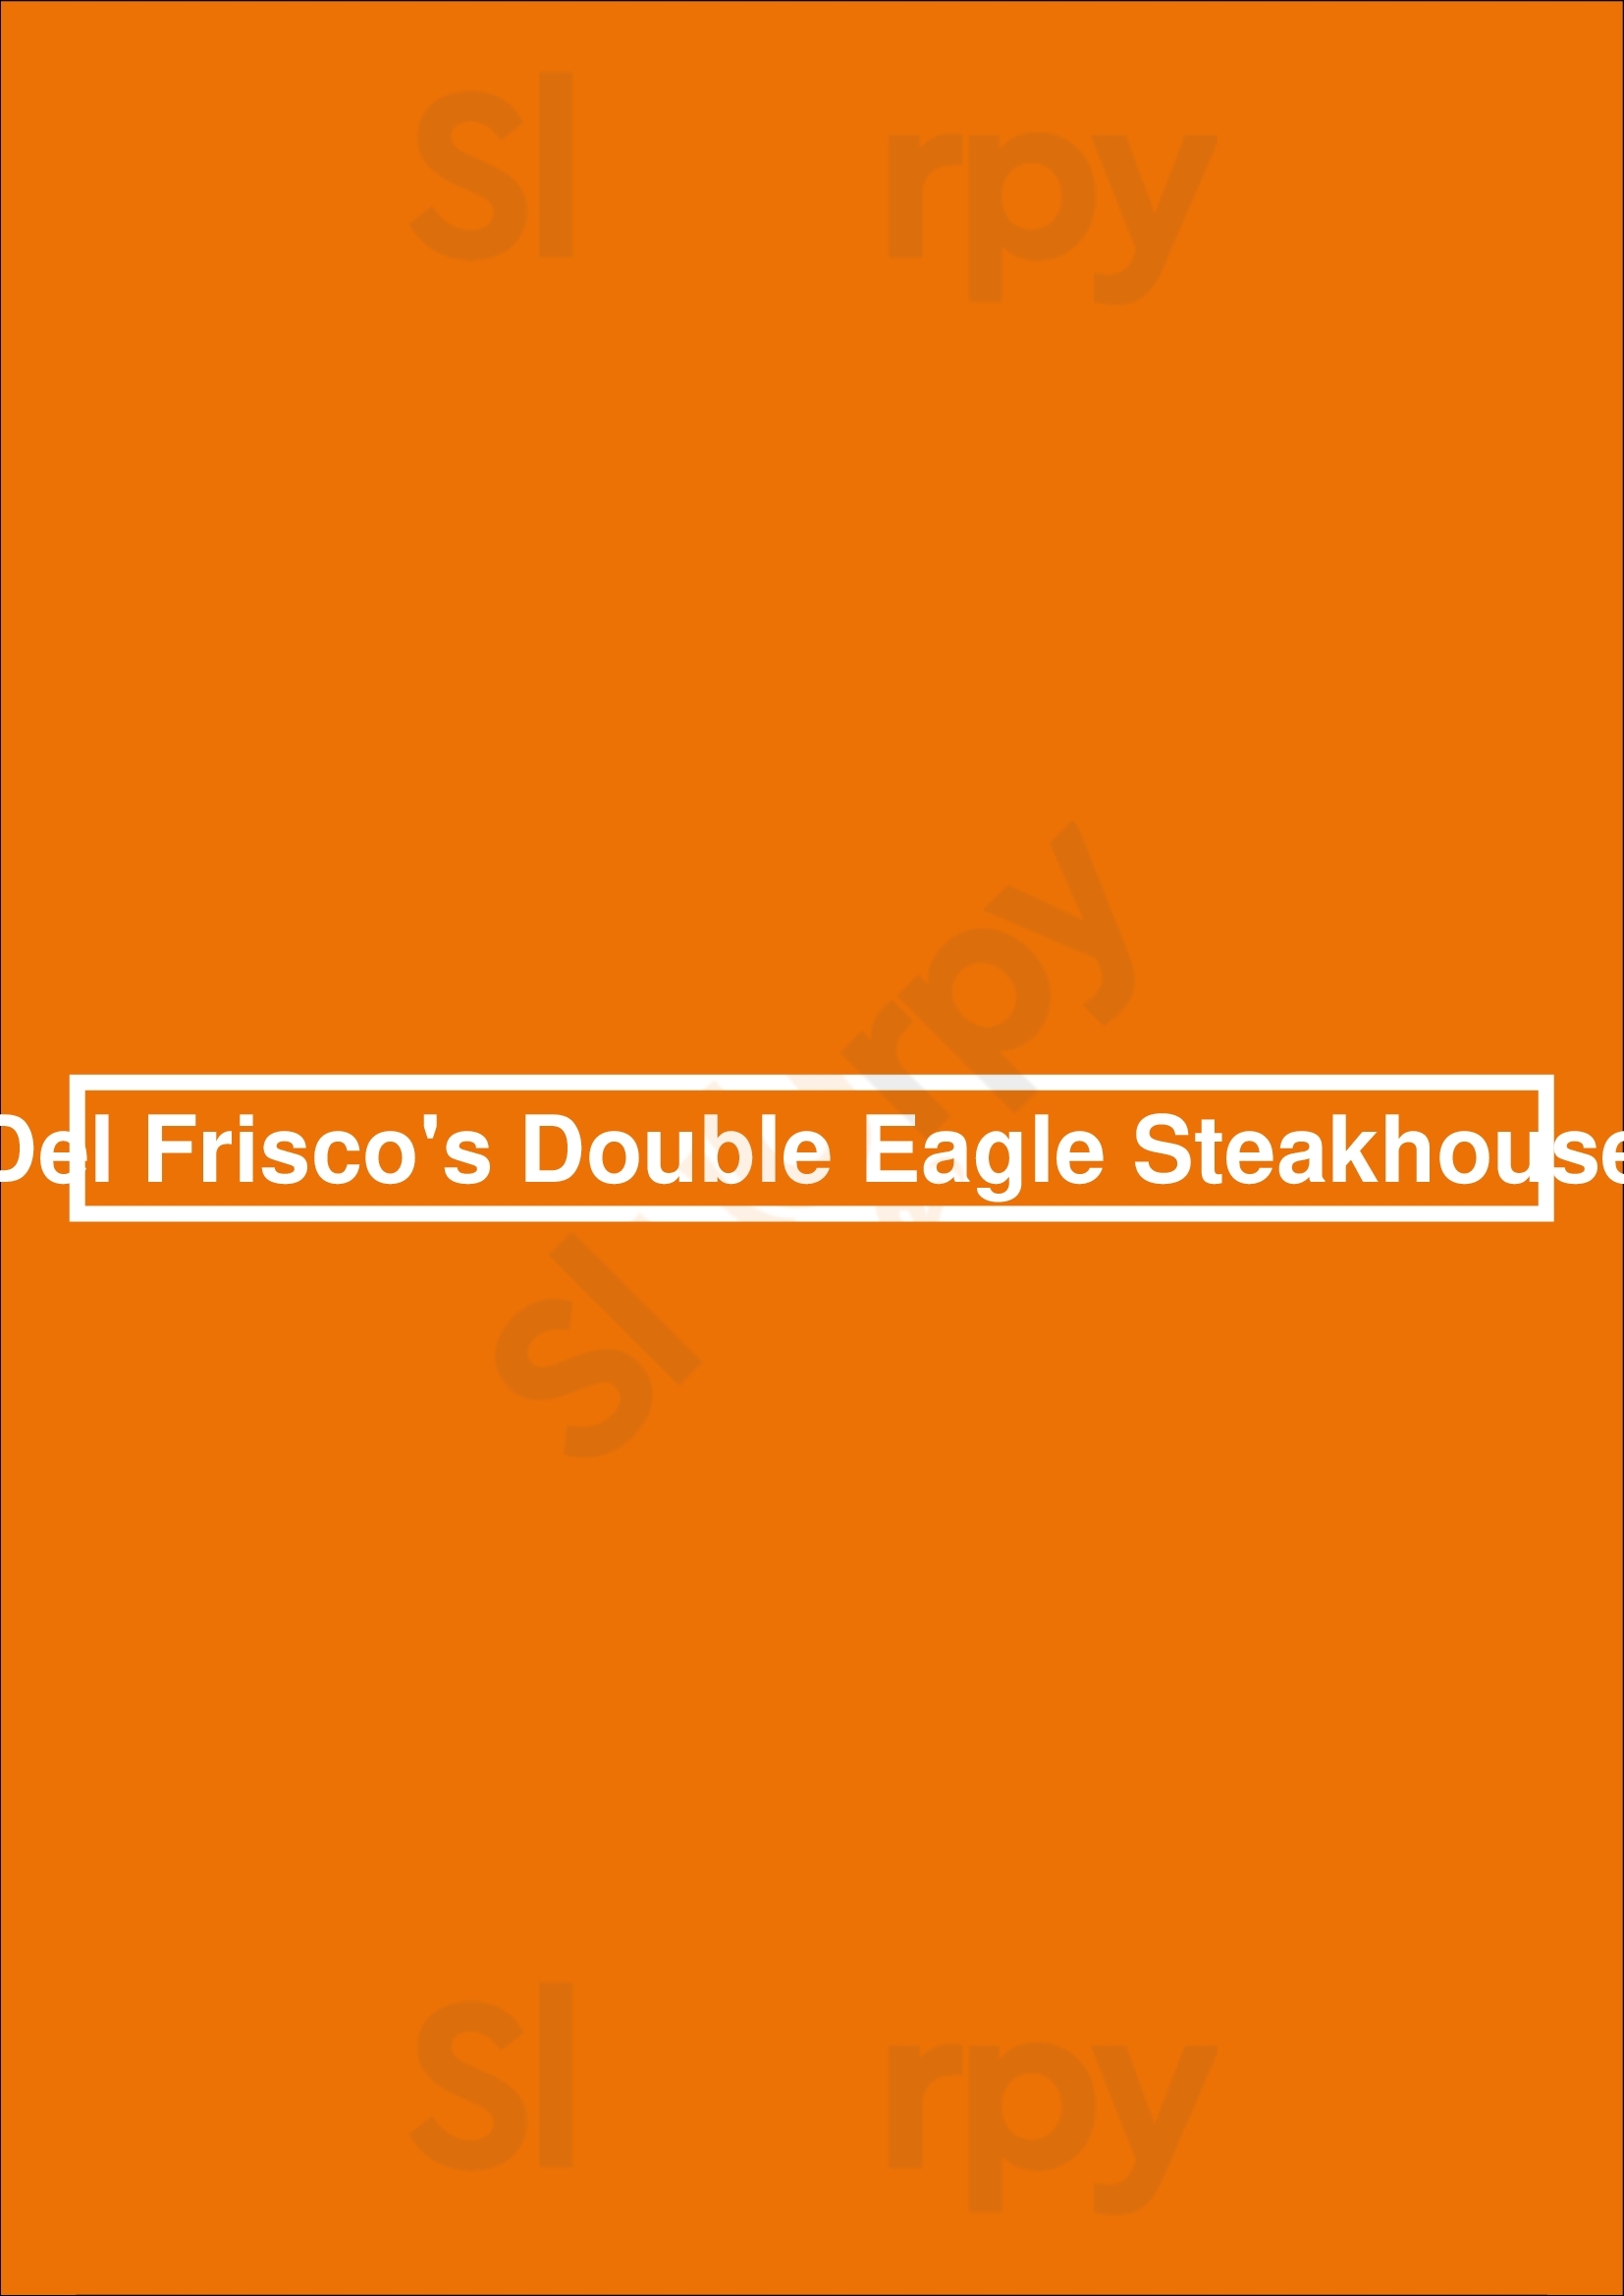 Del Frisco's Double Eagle Steakhouse Charlotte Menu - 1